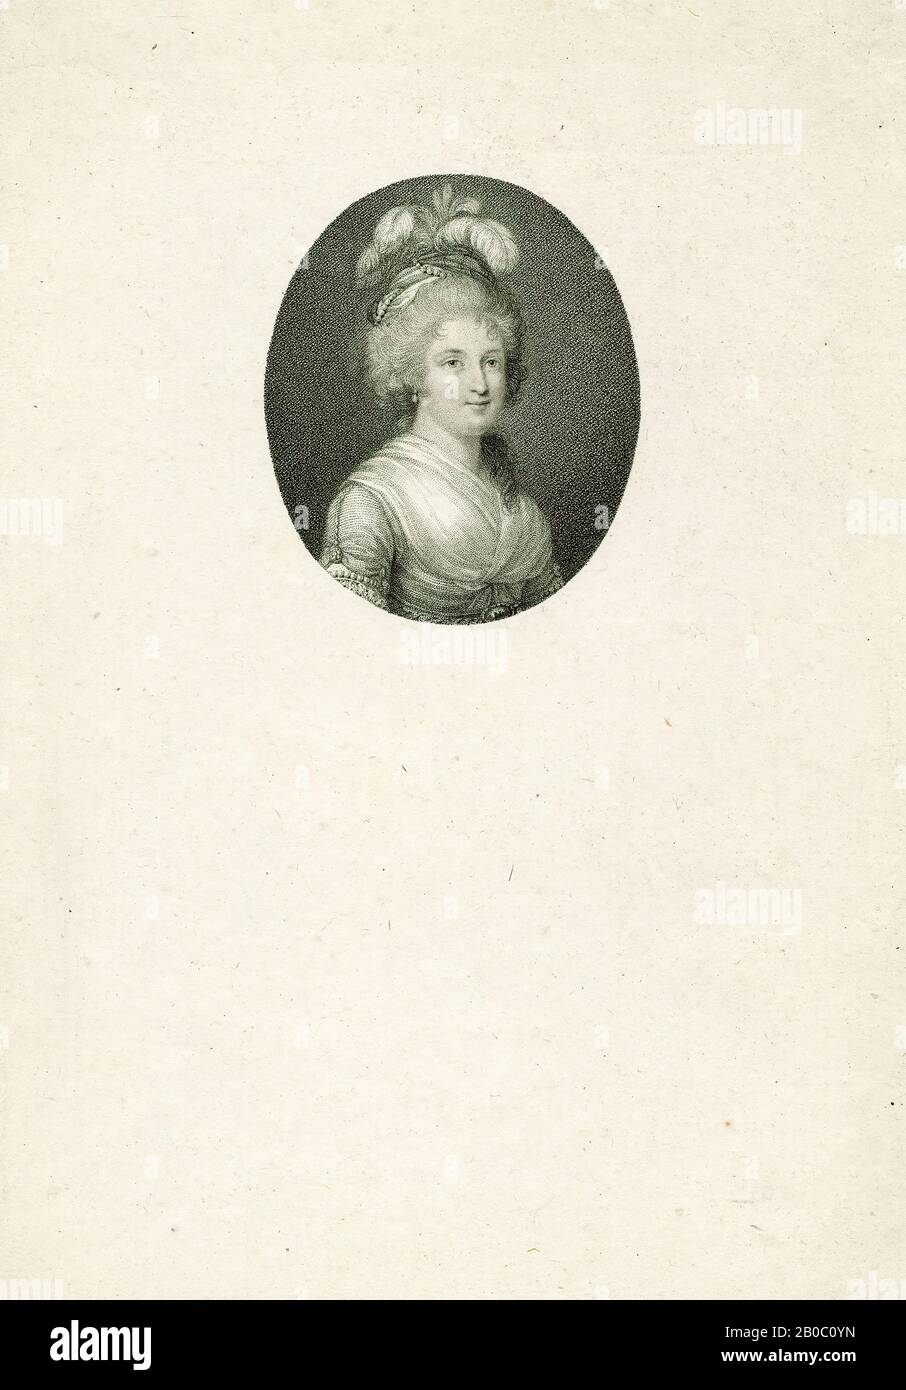 Francesco Bartolozzi, Portrait de Madame Elisabeth (sœur de Louis XVI), CA. 1770-1790, gravure à crépi sur papier, 3 po. x 2 1/2 po. (7,62 cm x 6,35 cm) Banque D'Images